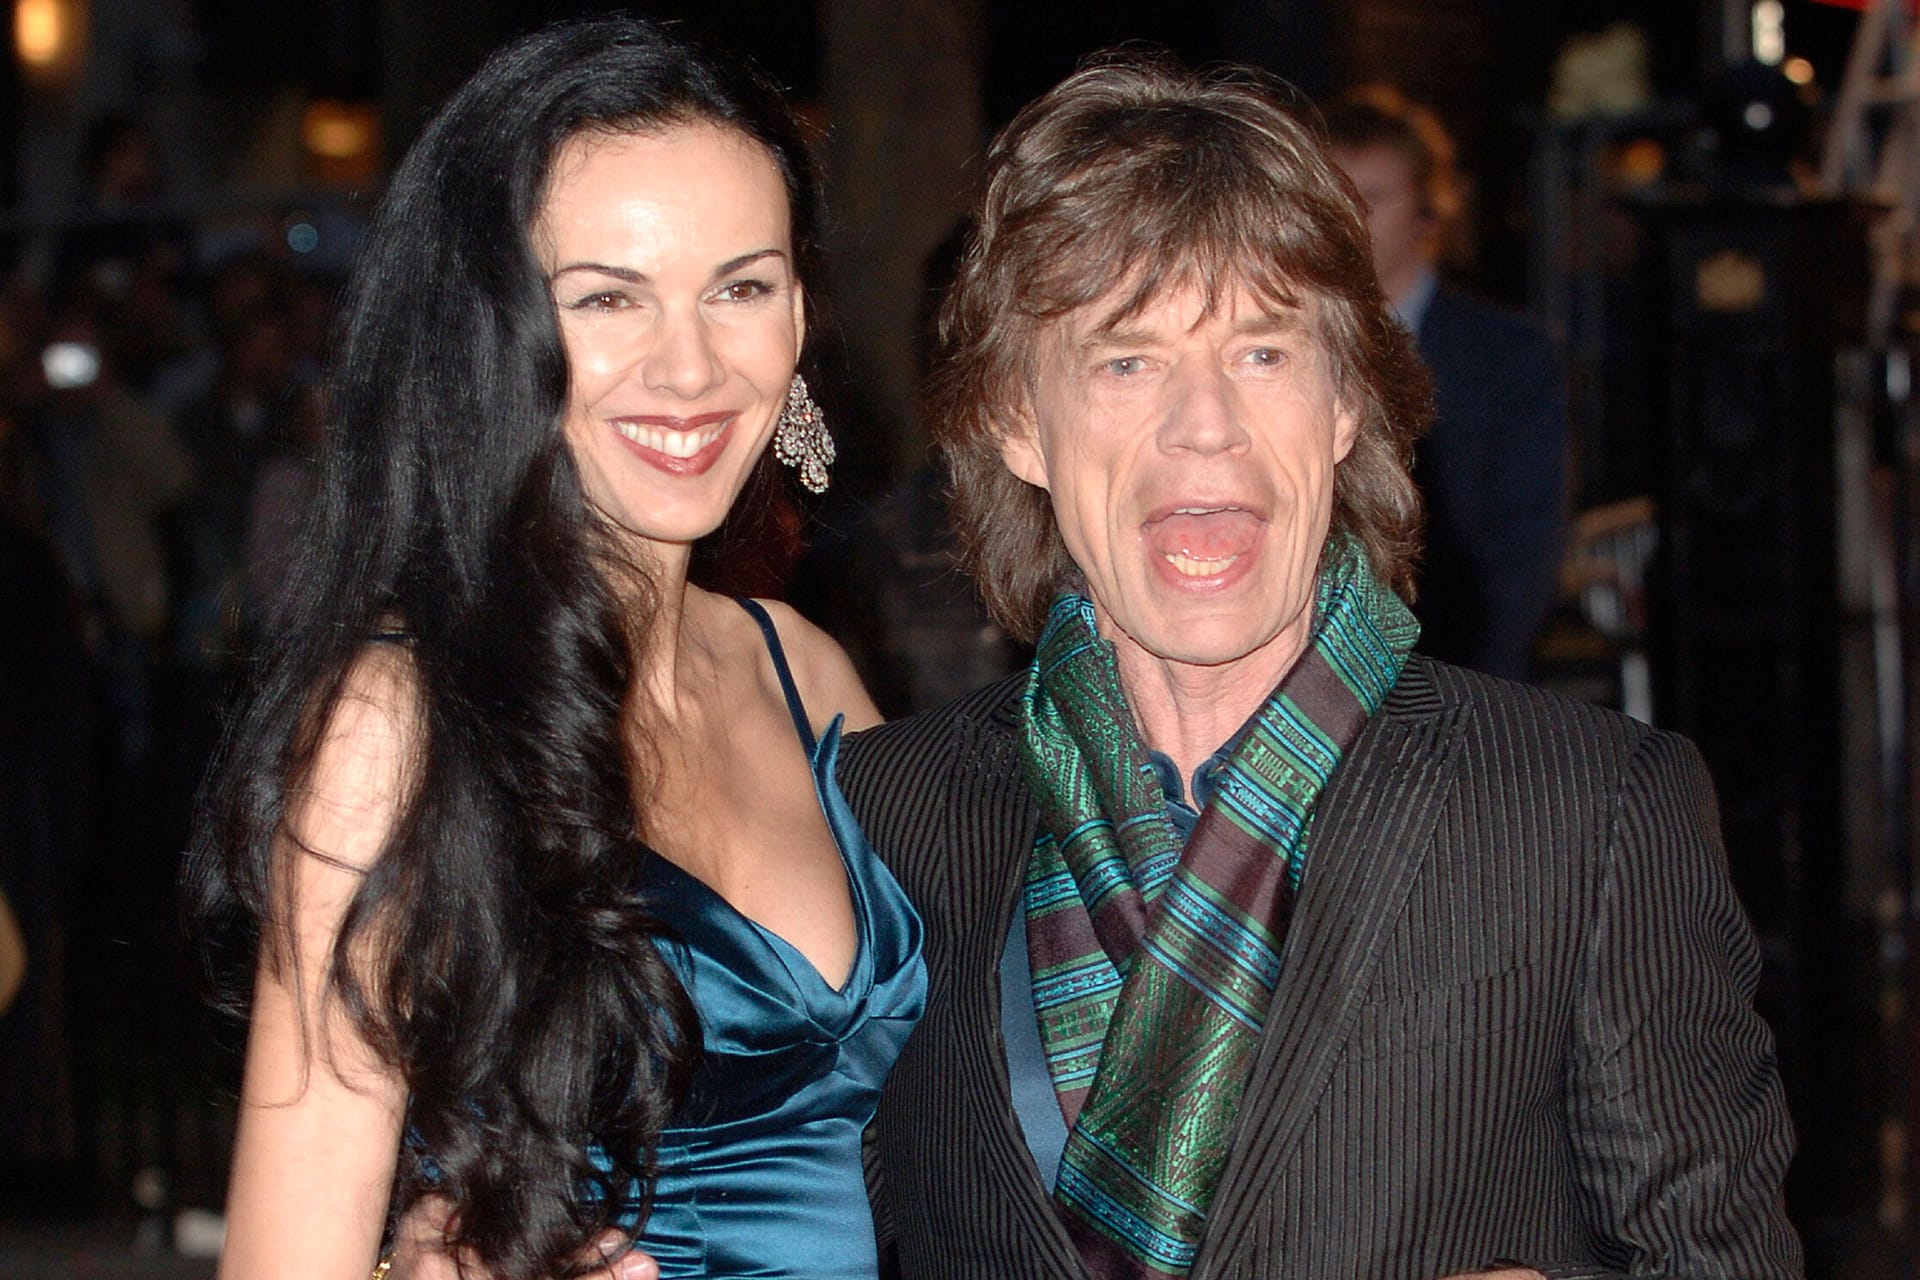 L'Wren Scott: 2001 kam Mick Jagger mit der Designerin zusammen. Die Beziehung endete mit dem Tod von Scott 2014.